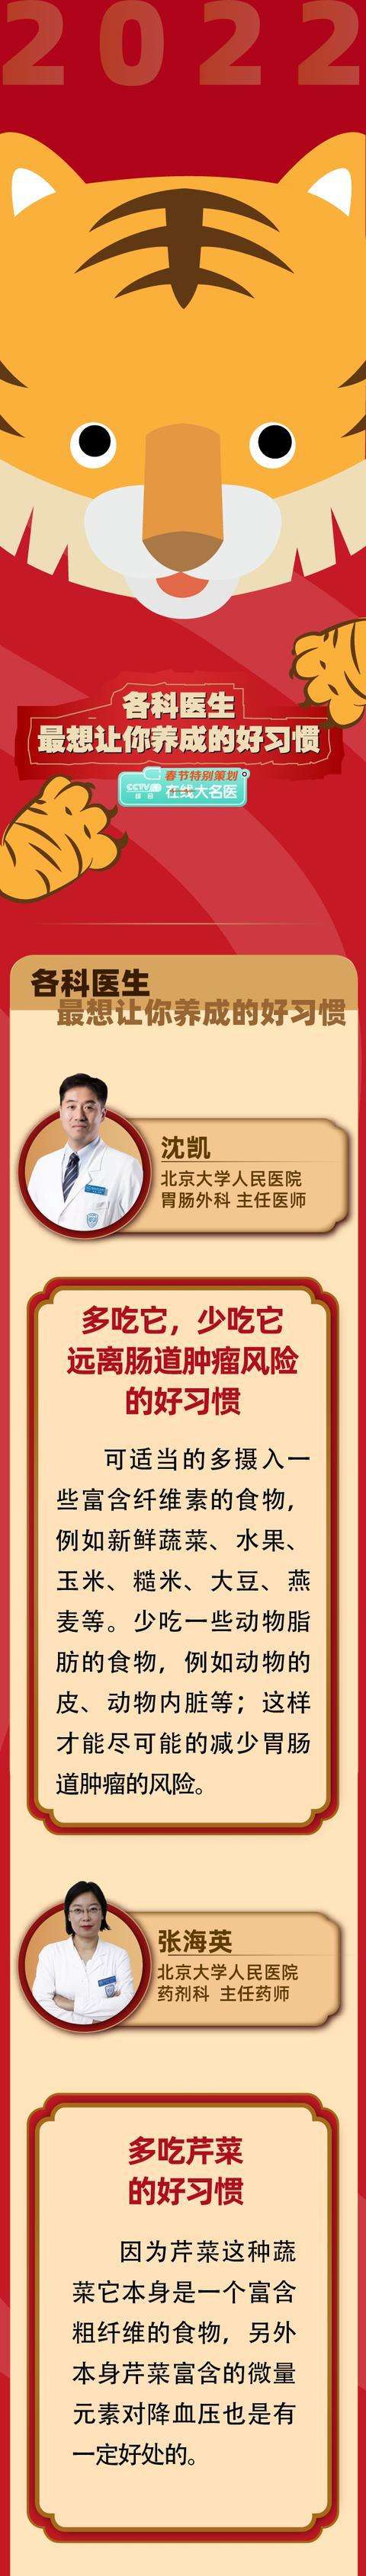 包含北京大学人民医院一直在用的黄牛挂号，推荐大家收藏备用的词条